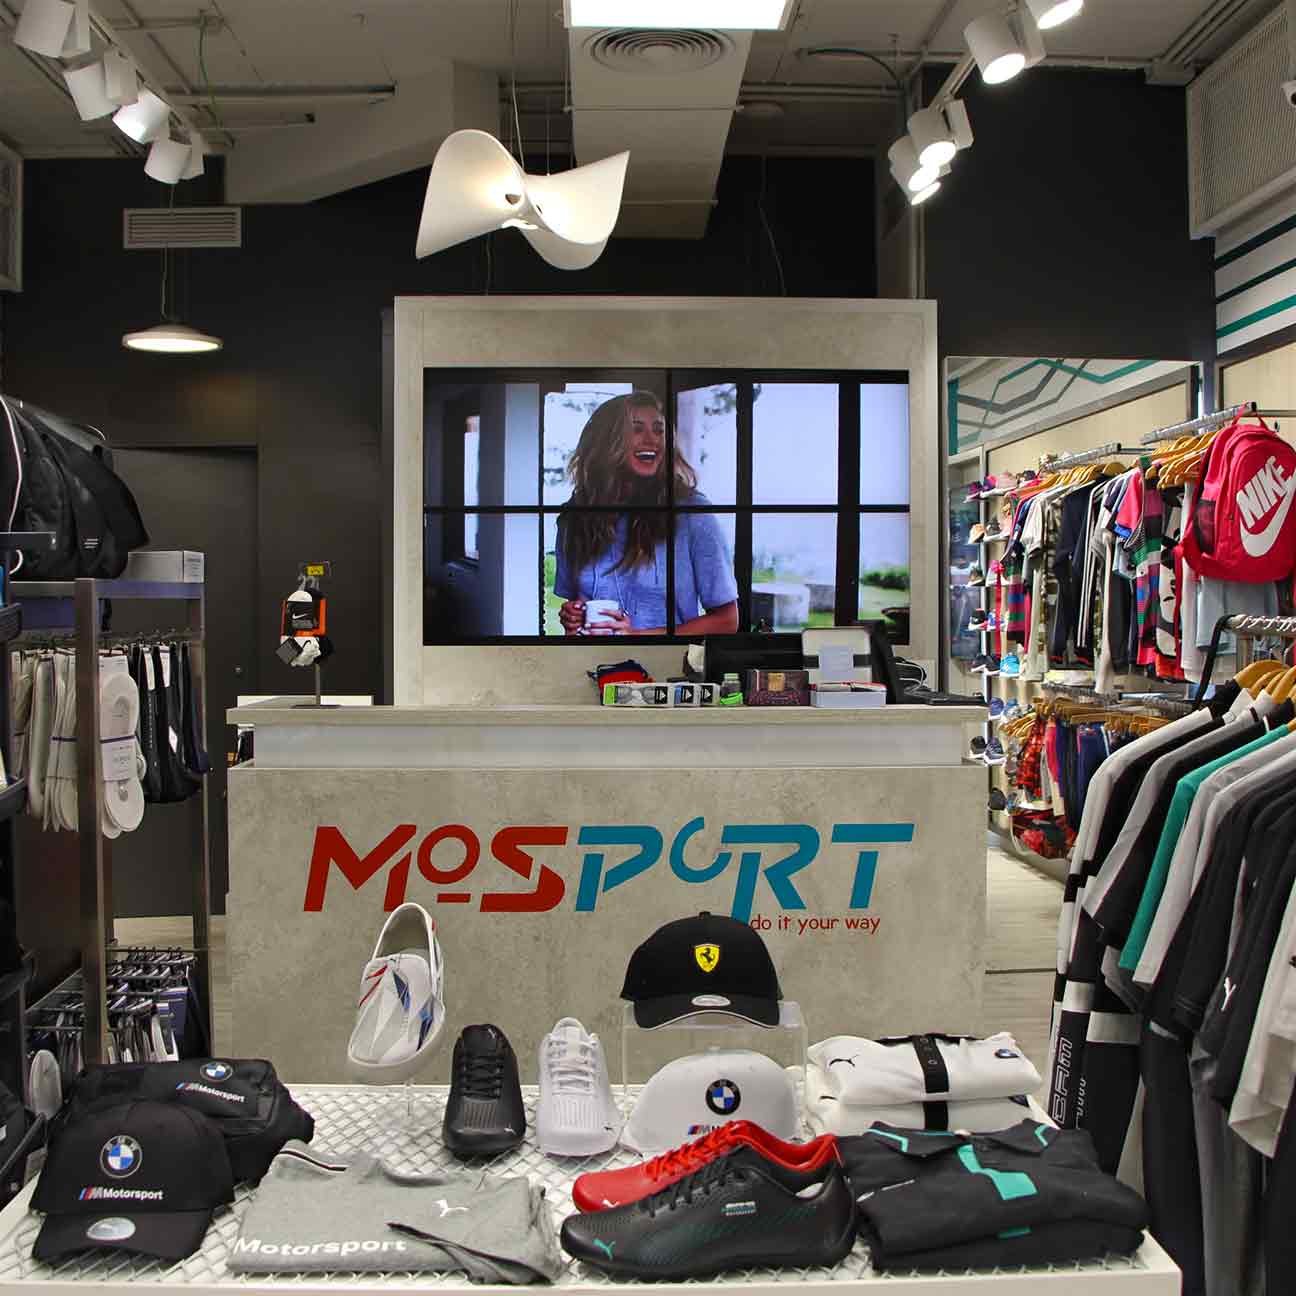 Tienda de ropa Mosport en Tenerife